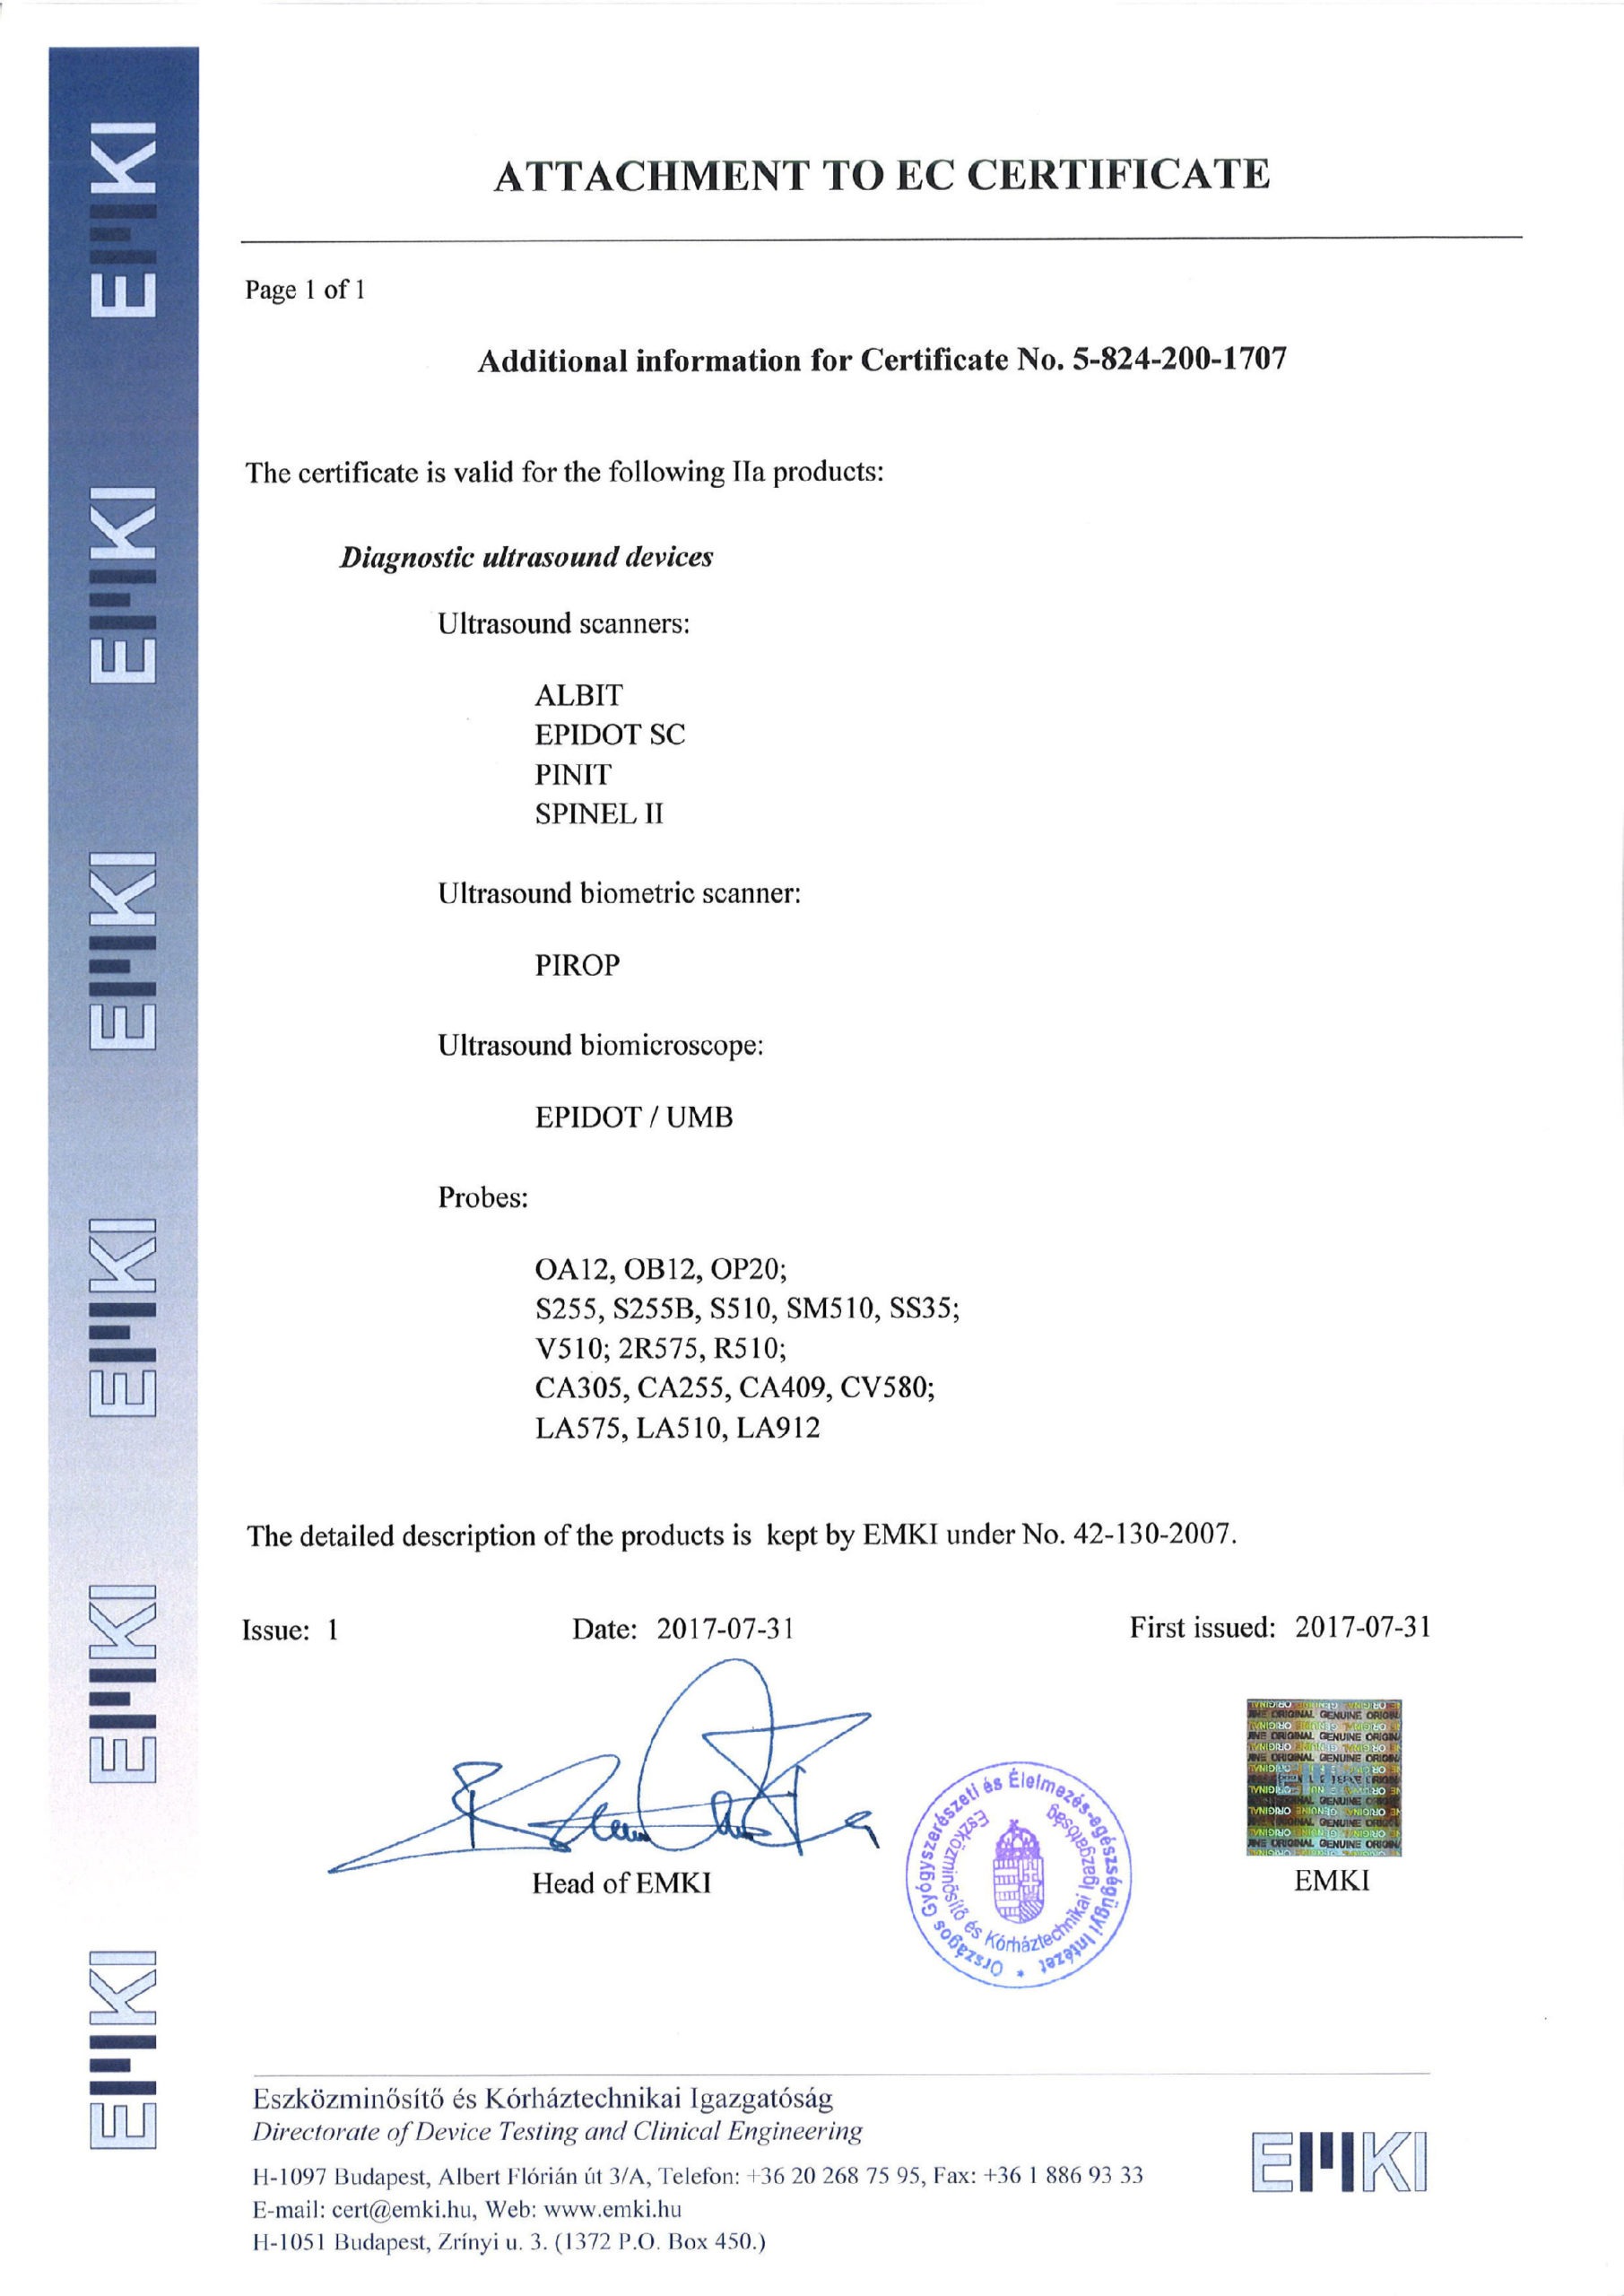 Attachment to CE Certificate